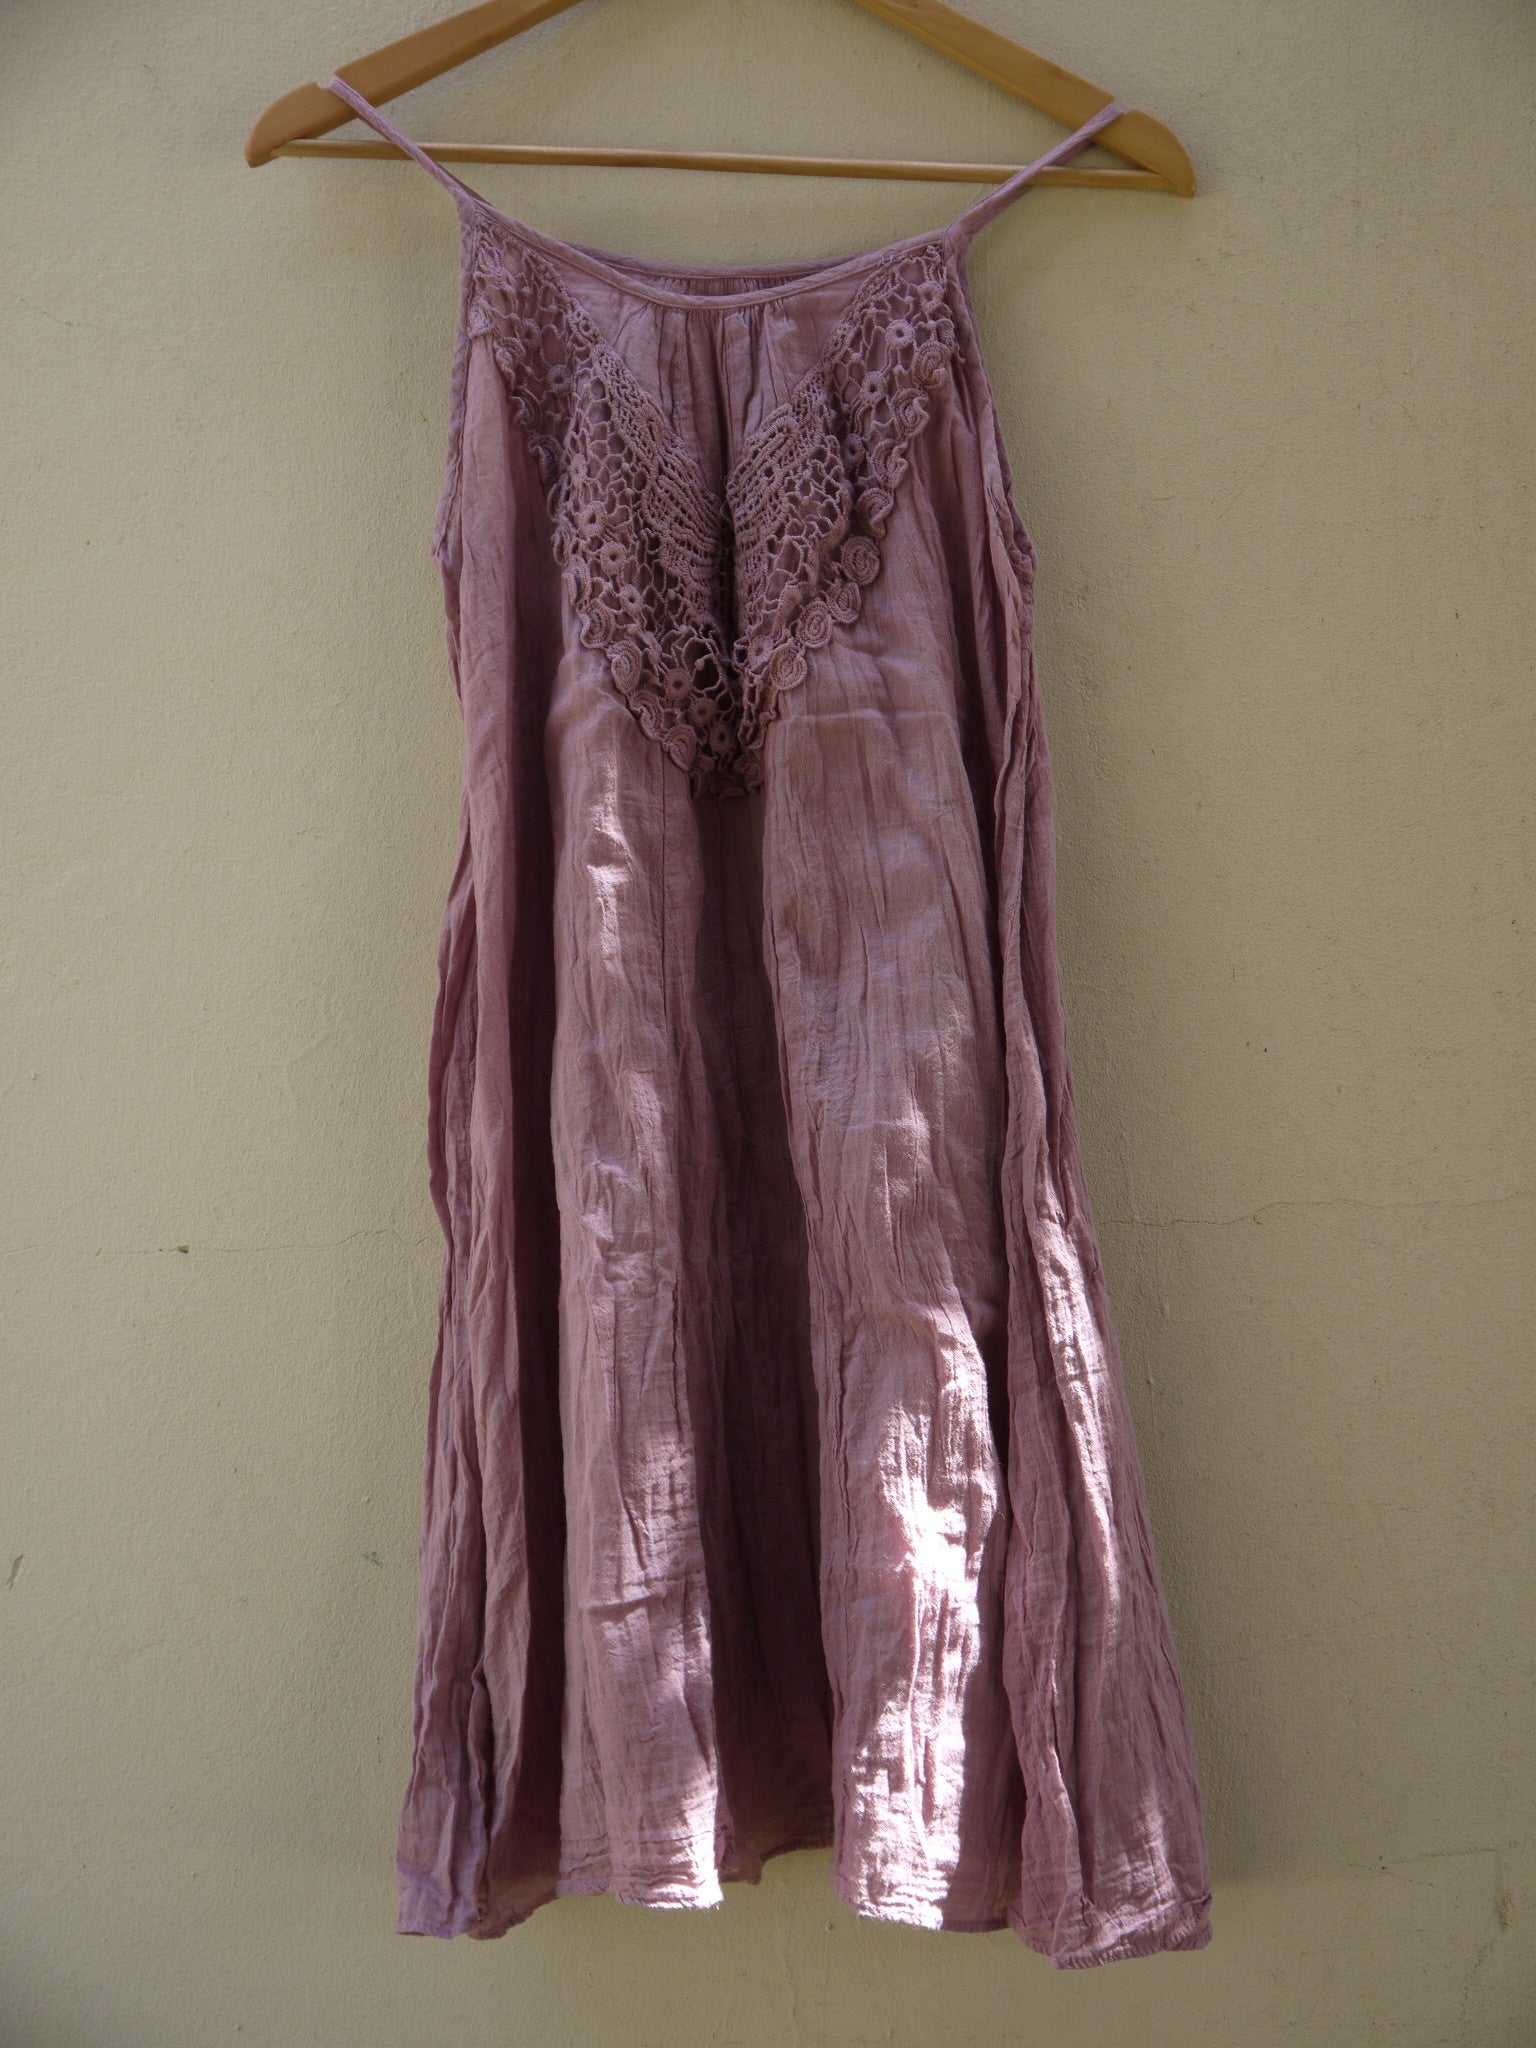 Lace Top A-line Dress